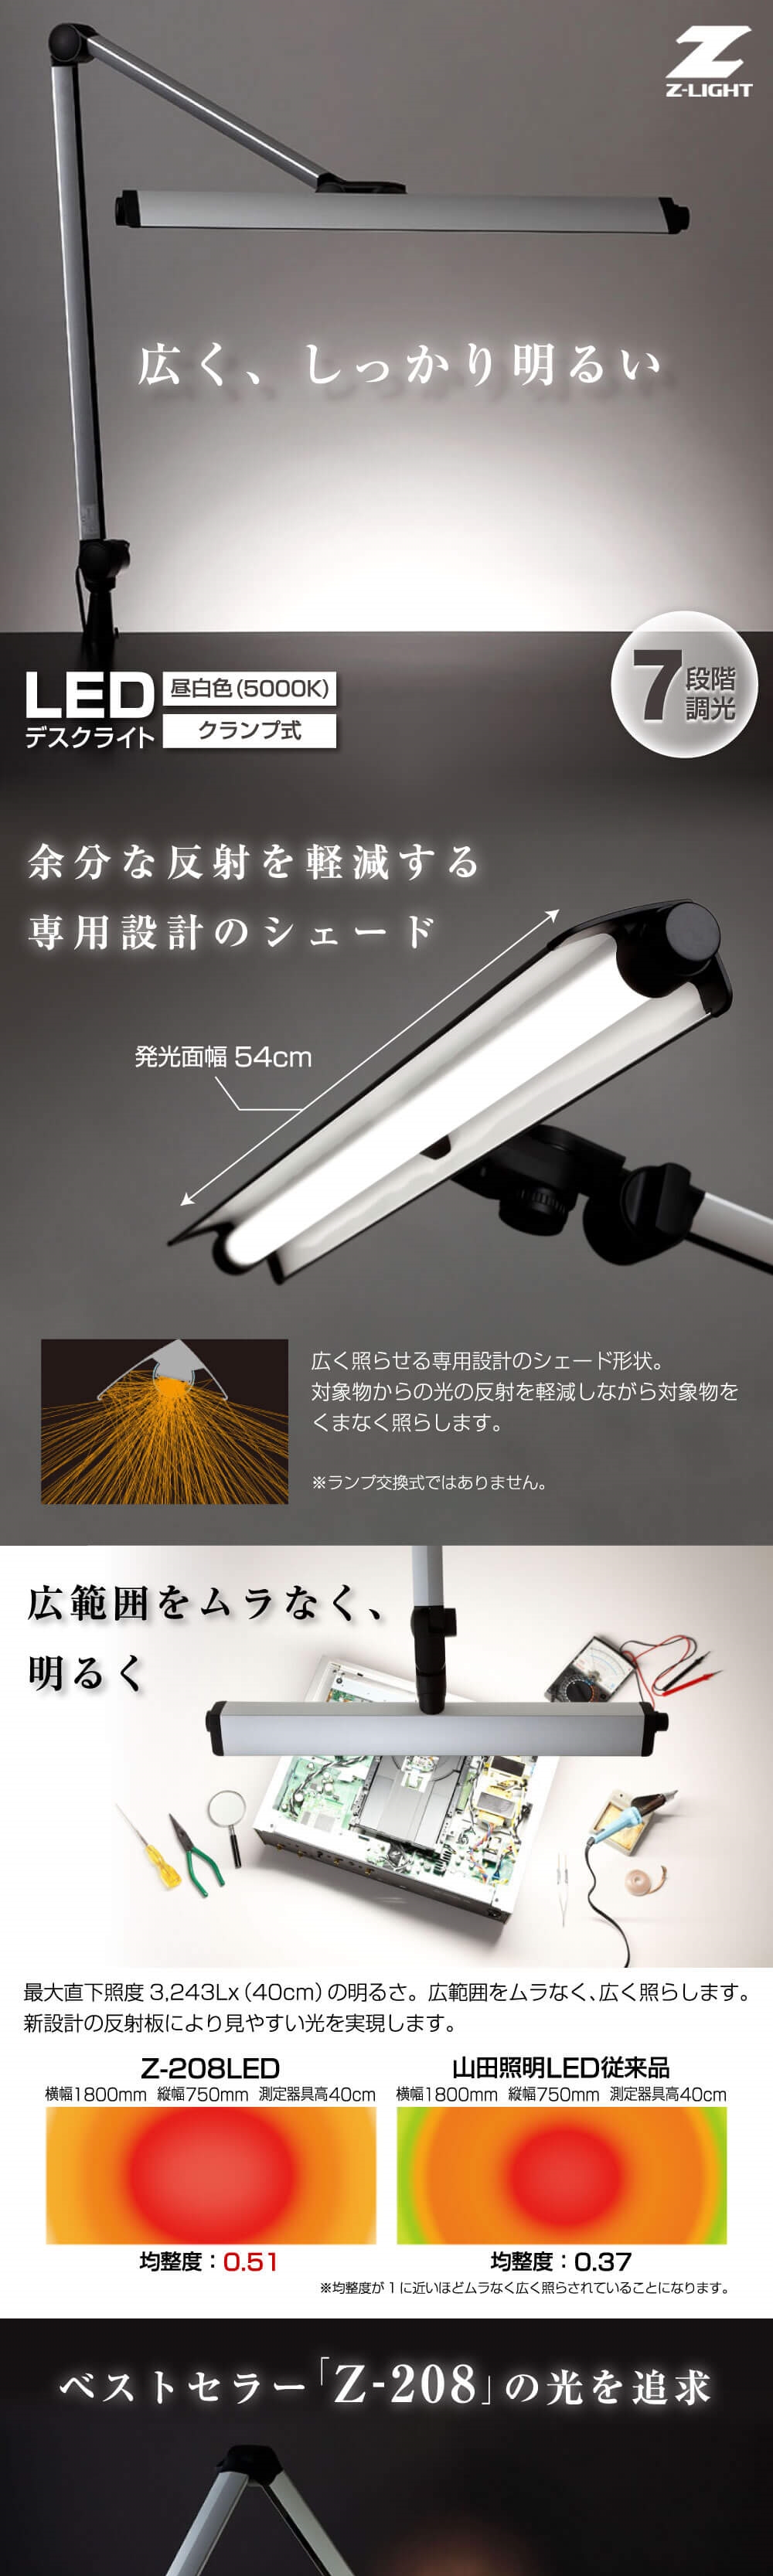 山田照明 Z-208LEDSL Z-Light(ゼットライト) [LEDデスクライト] | 激安